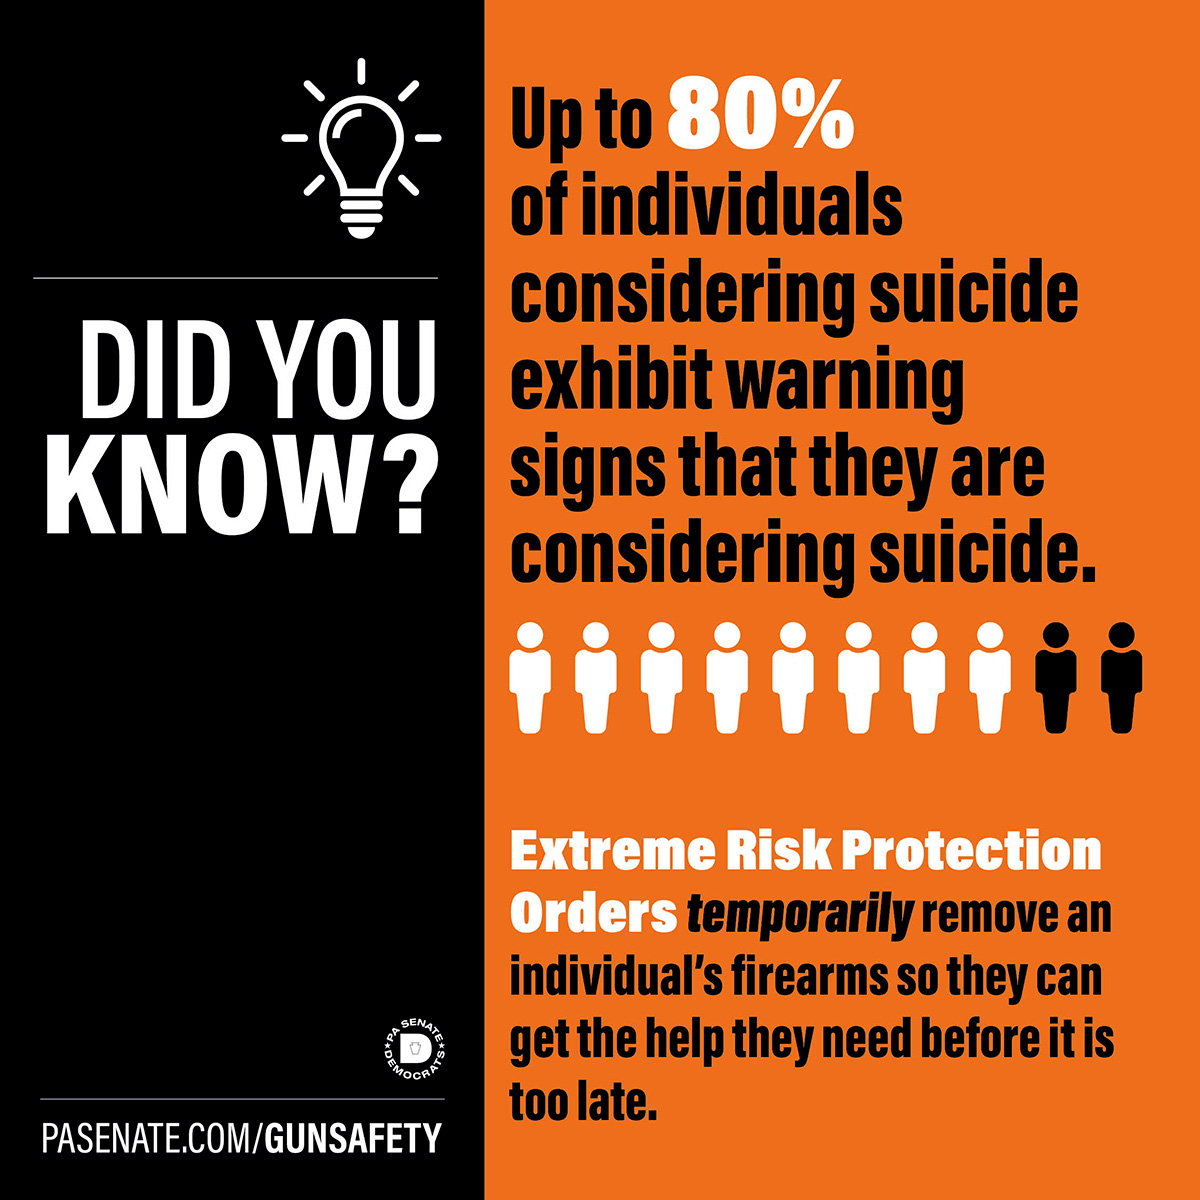 ¿Sabía que? Hasta el 80% de las personas que se plantean el suicidio muestran signos de advertencia de que están pensando en suicidarse.